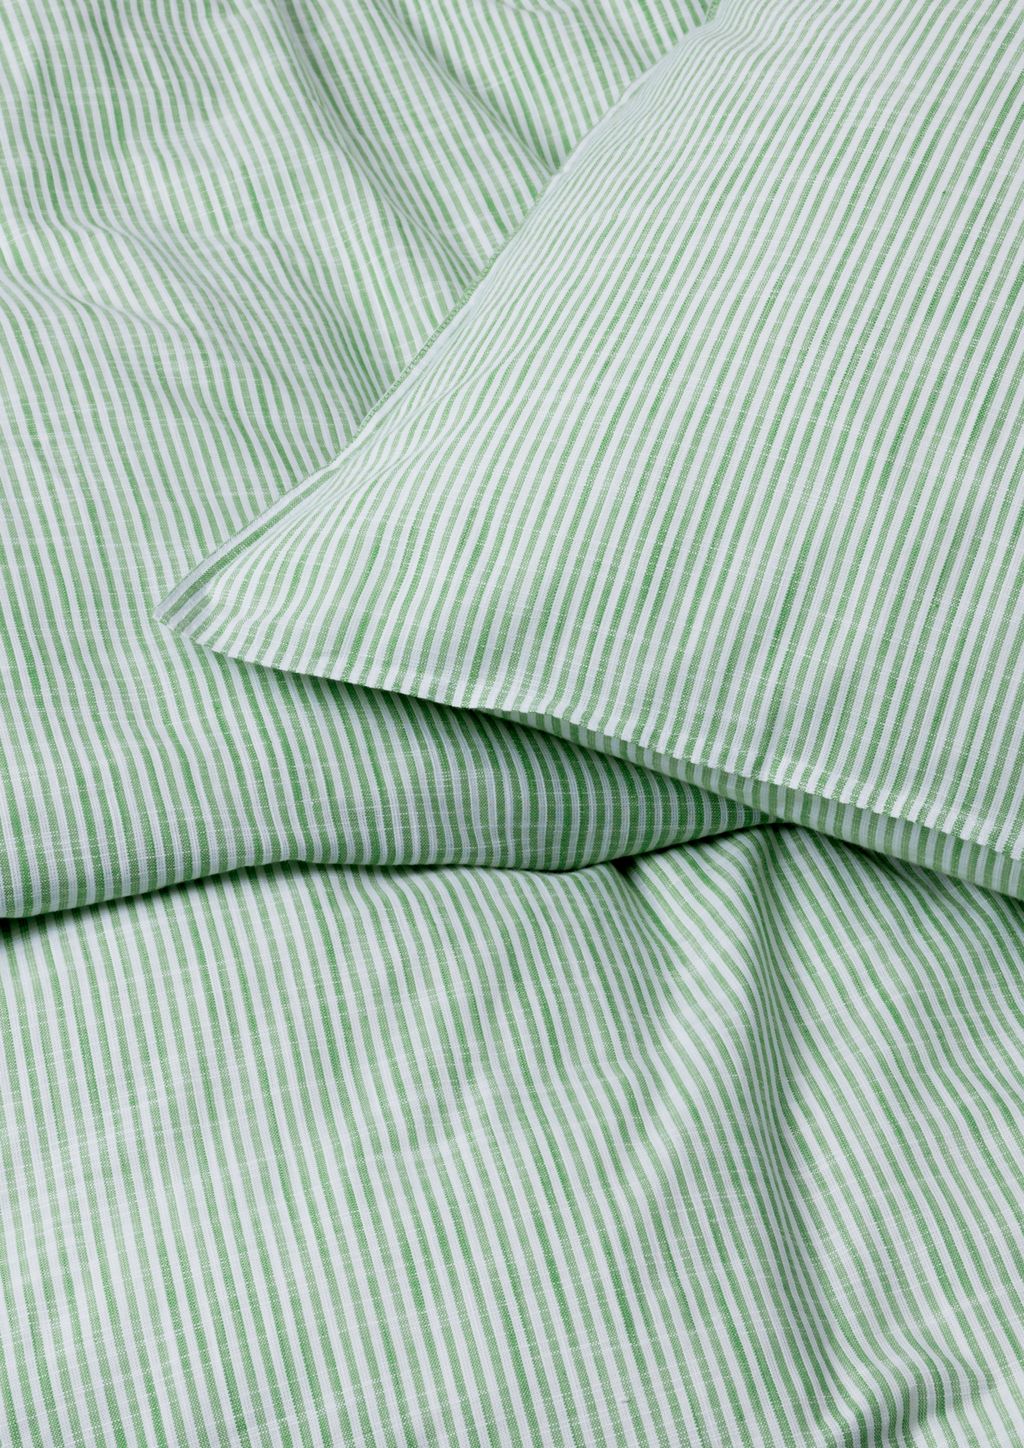 Juna Monochrome Lines Bettwäsche 140 x220 cm, grün/weiß